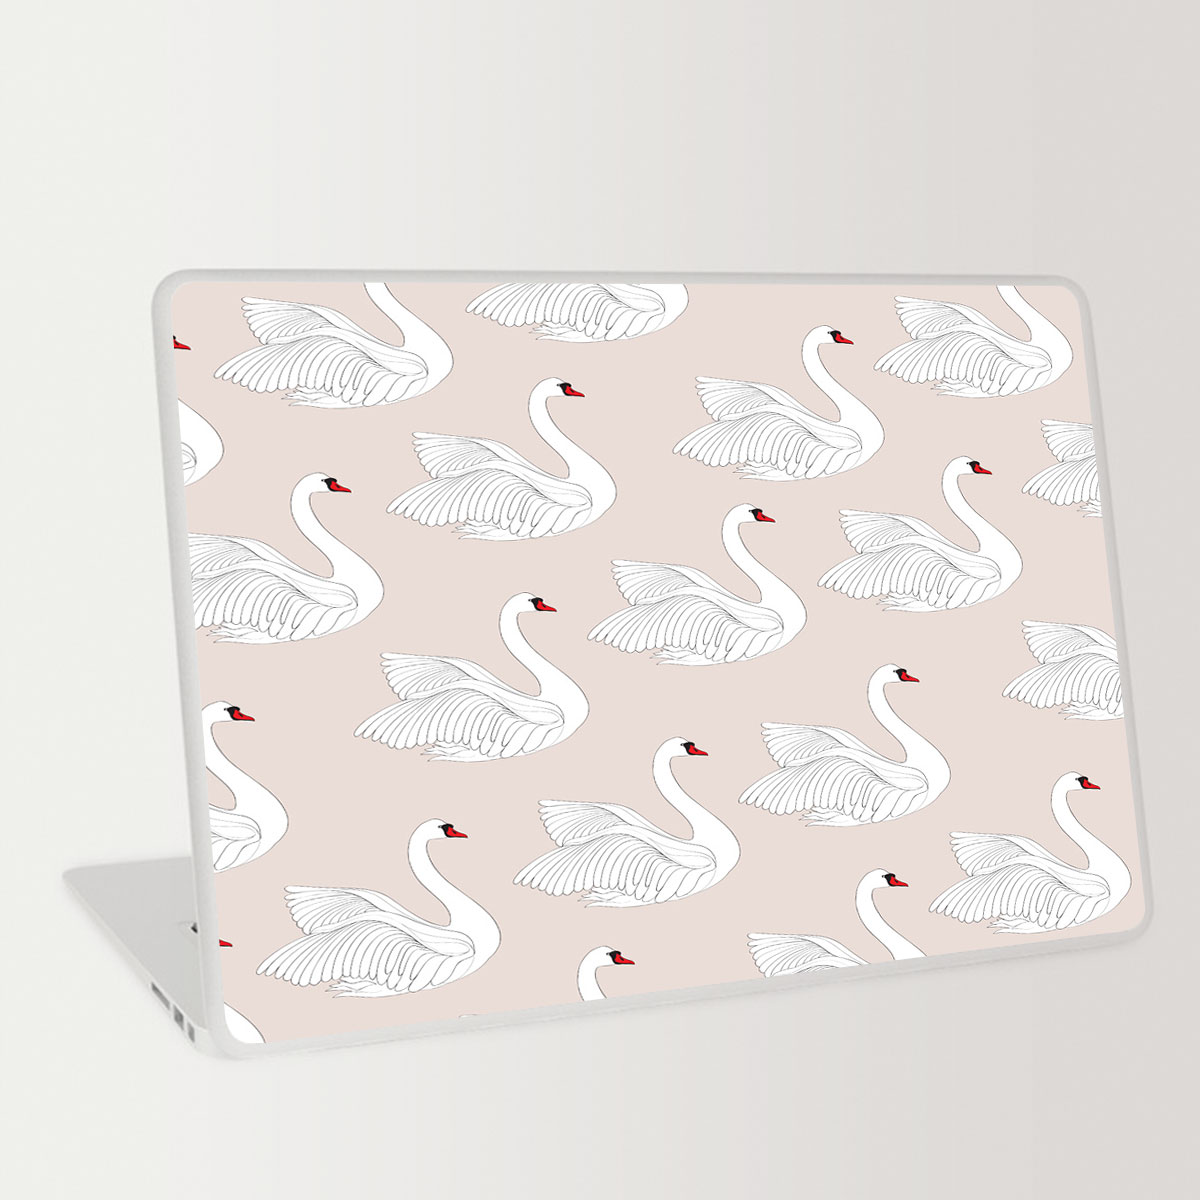 Iconic White Swan Laptop Skin